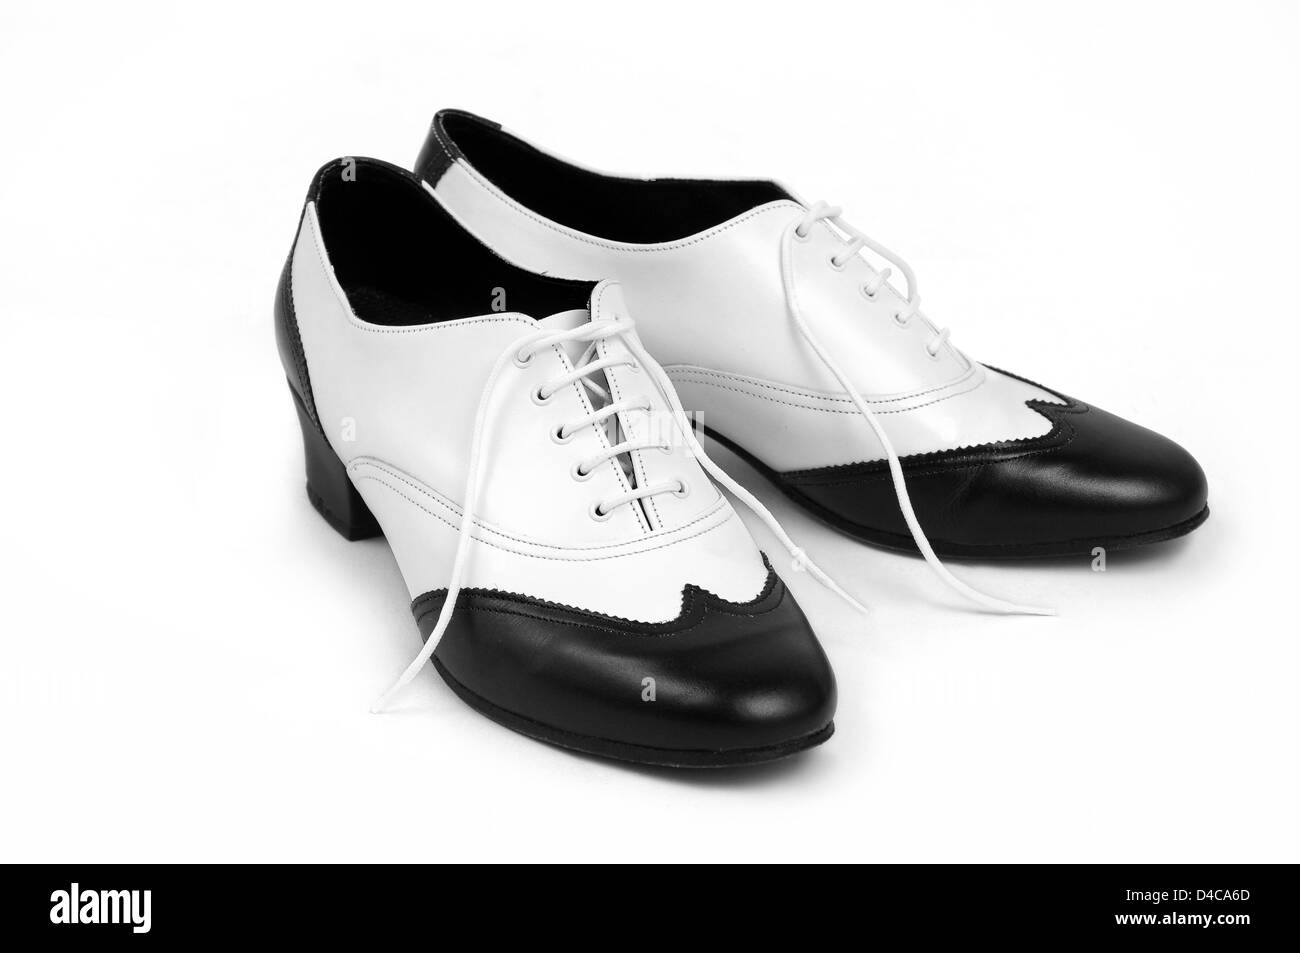 Zapatos Bailes de salón Combi Negro/Blanco - Danza Maty